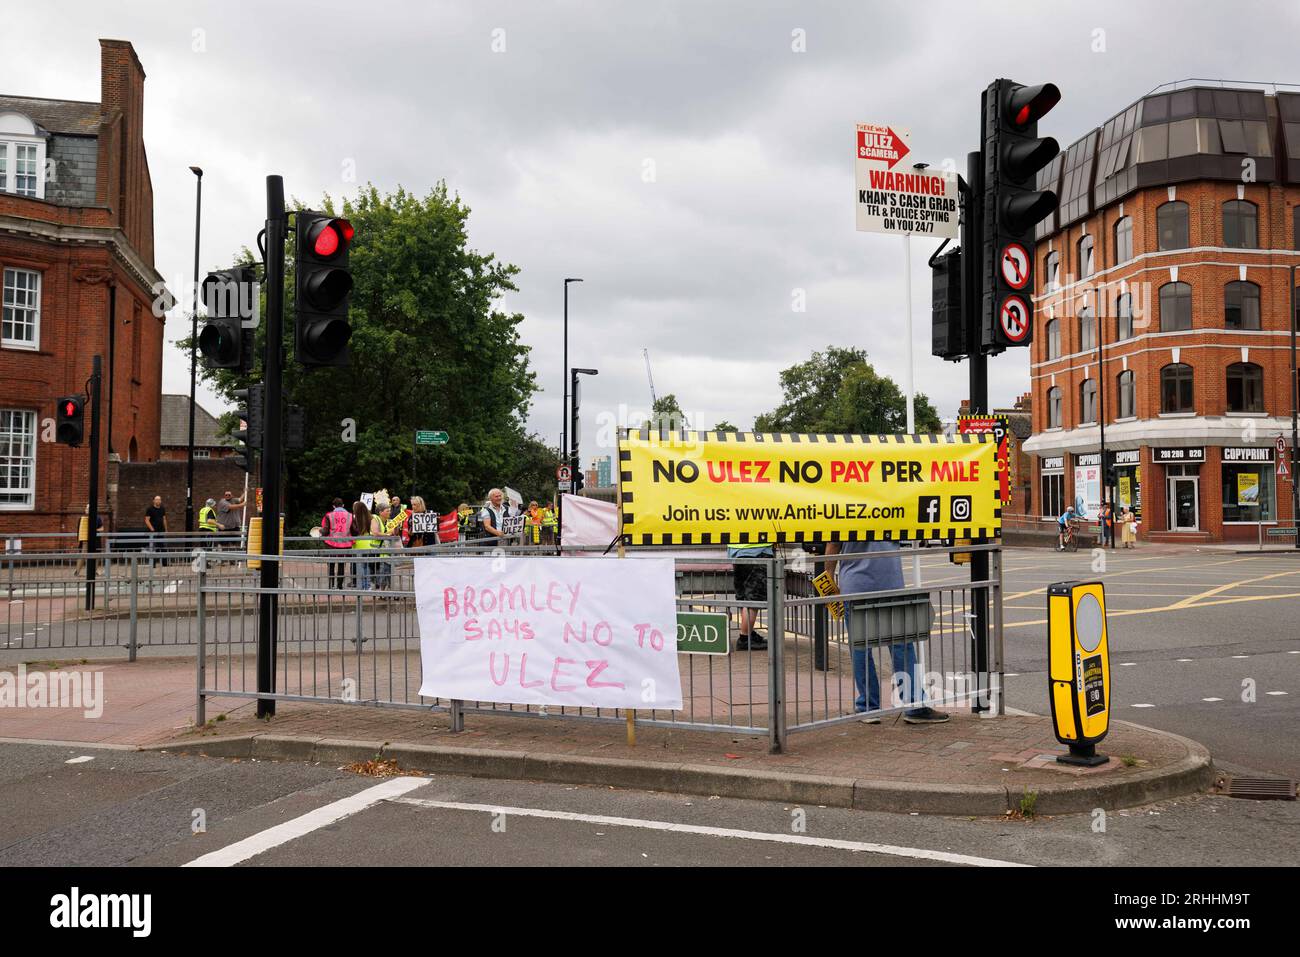 Protesta anti-Ulez a Bromley, a est di Londra questo pomeriggio. Nella foto: Gli striscioni sono collocati in corrispondenza di un incrocio. Immagine ripresa il 12 agosto 2023. © Belinda Jiao Foto Stock